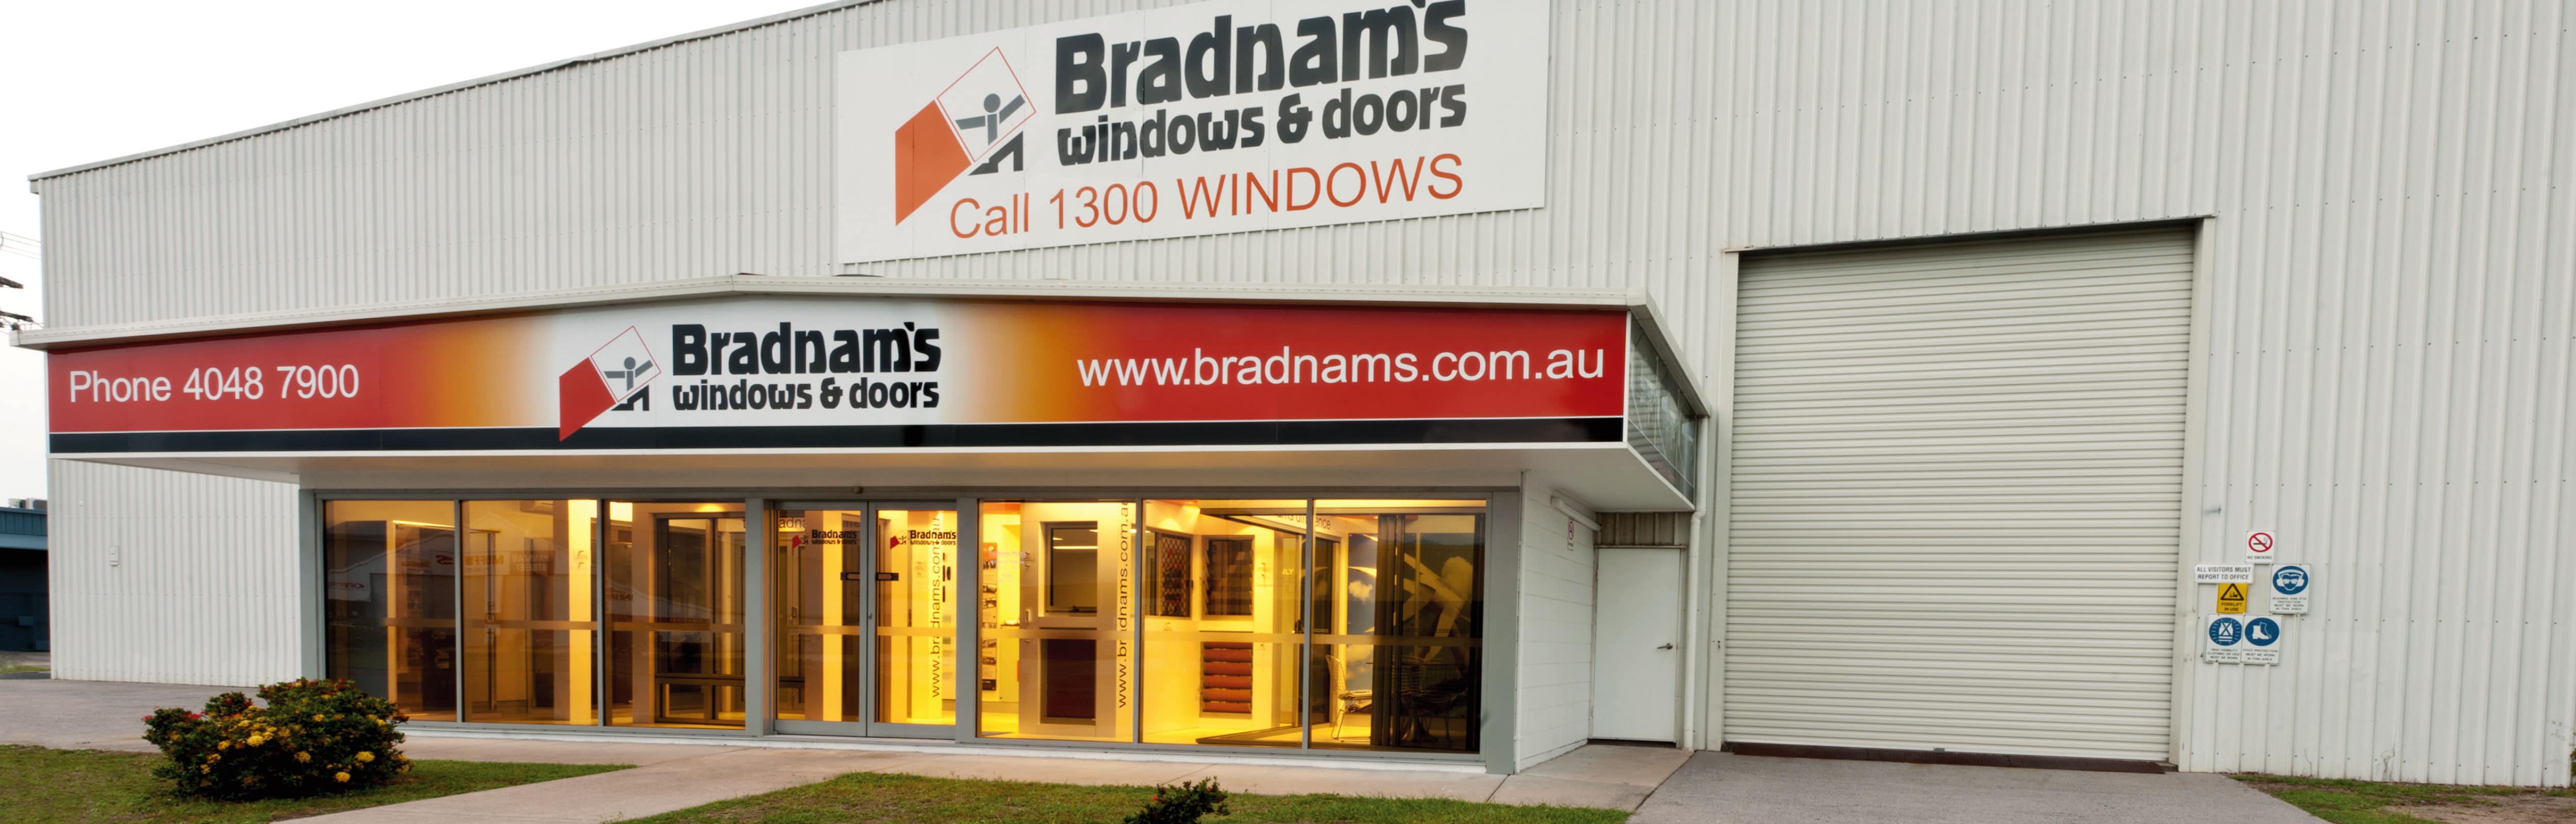 Bradnam's Windows & Doors Cairns showroom